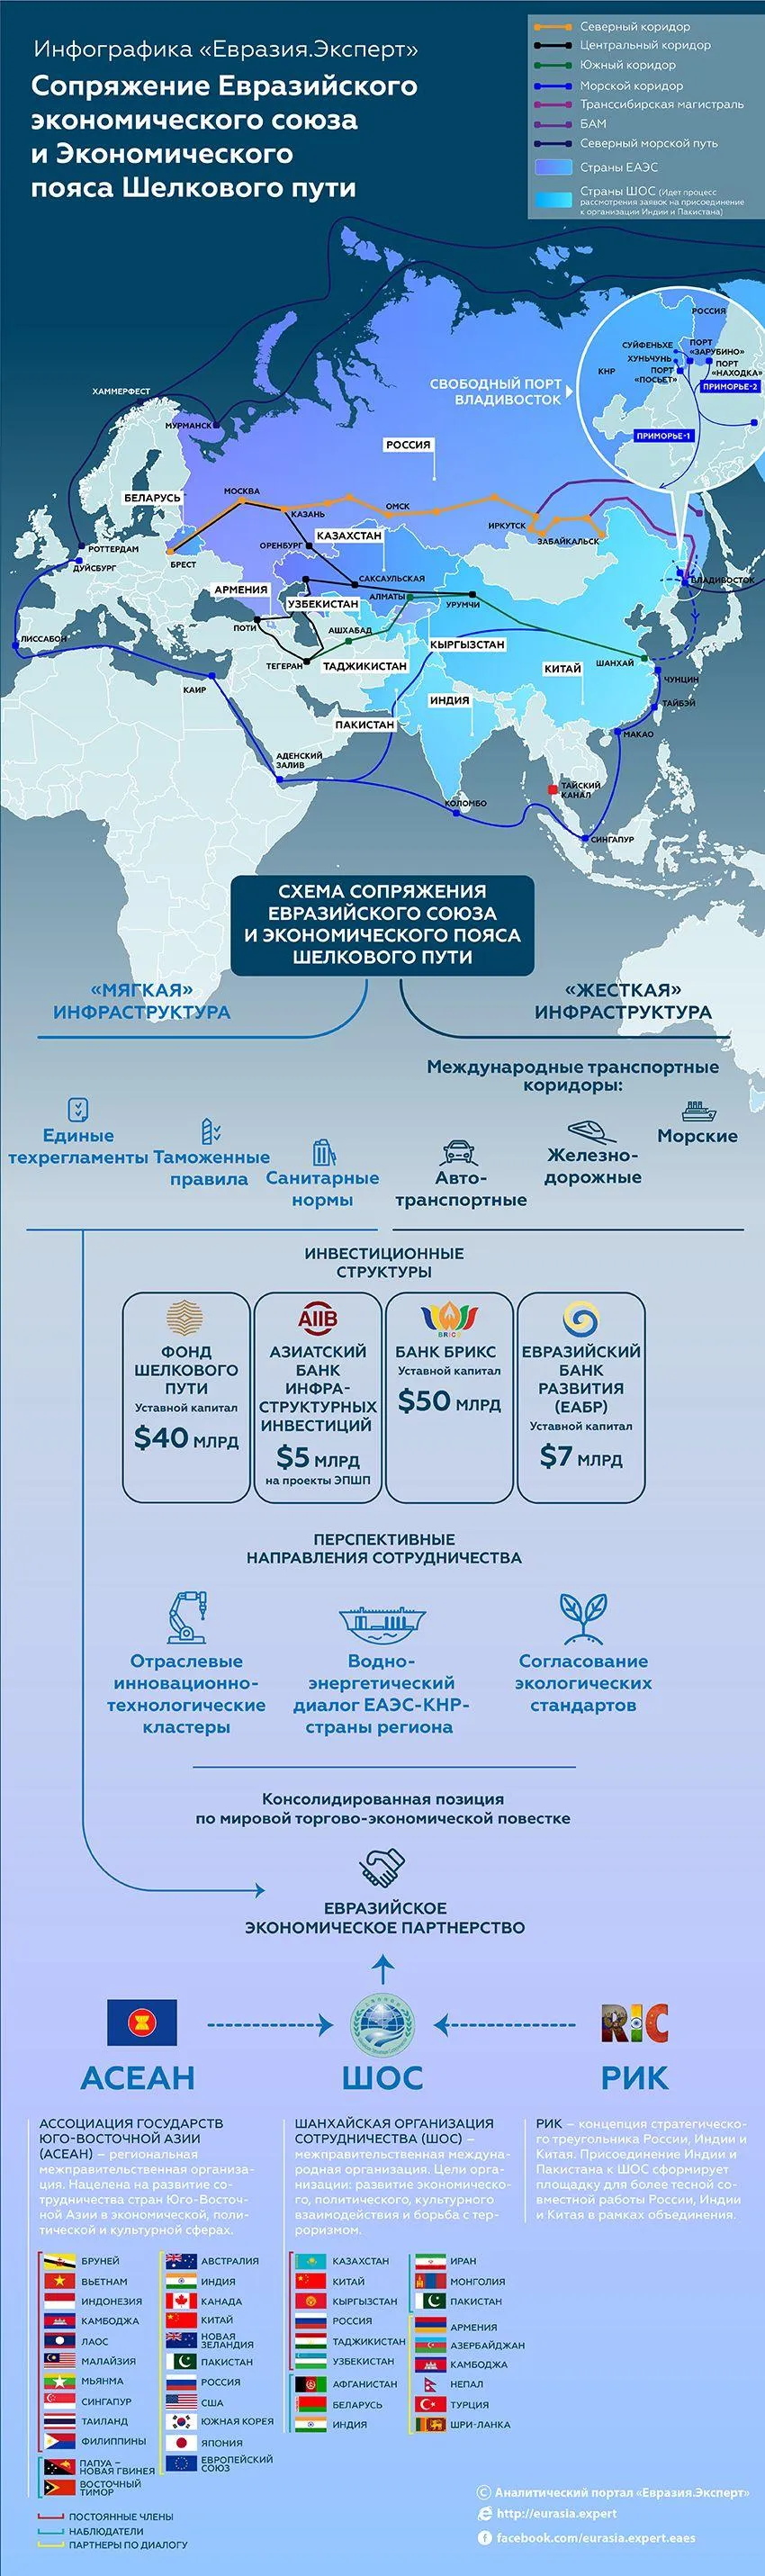 Инфографика: Сопряжение Евразийского экономического союза и Экономического пояса Шелкового пути